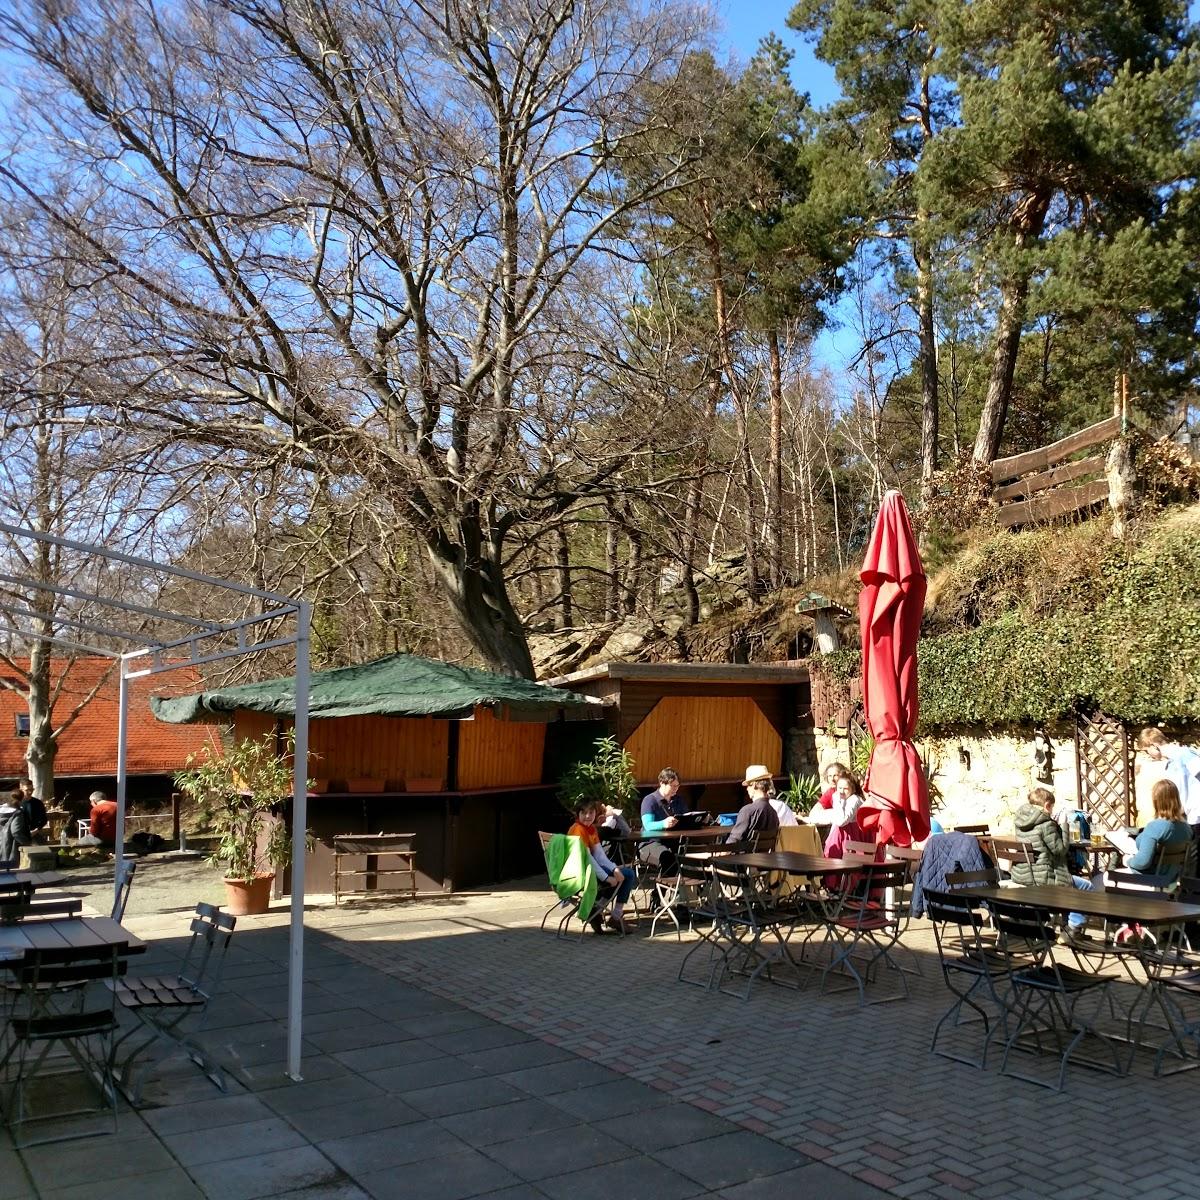 Restaurant "Gaststätte zum Großvater" in Blankenburg (Harz)